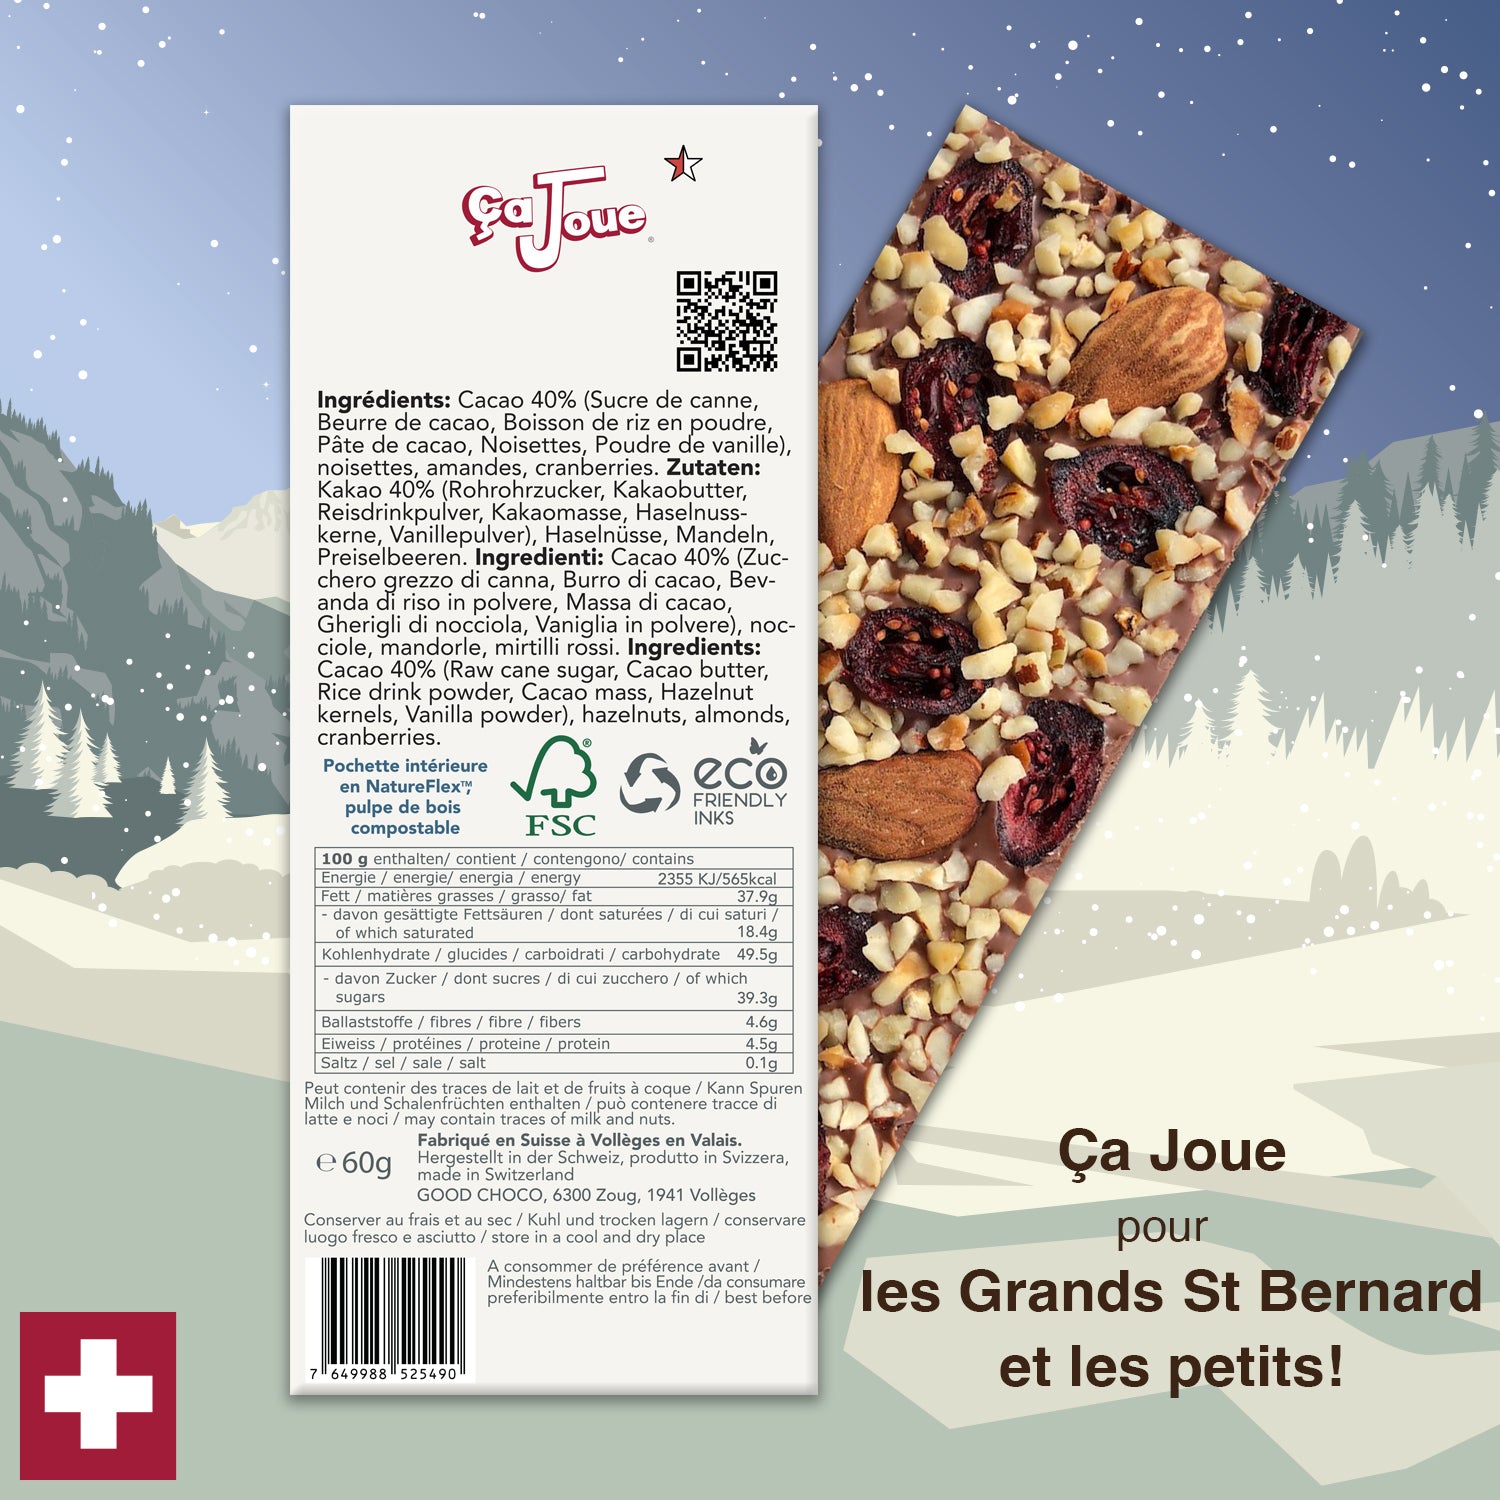 Ça Joue für die für kleine Bernhardiner (Ref-BV5) Schokolade aus Val de Bagnes